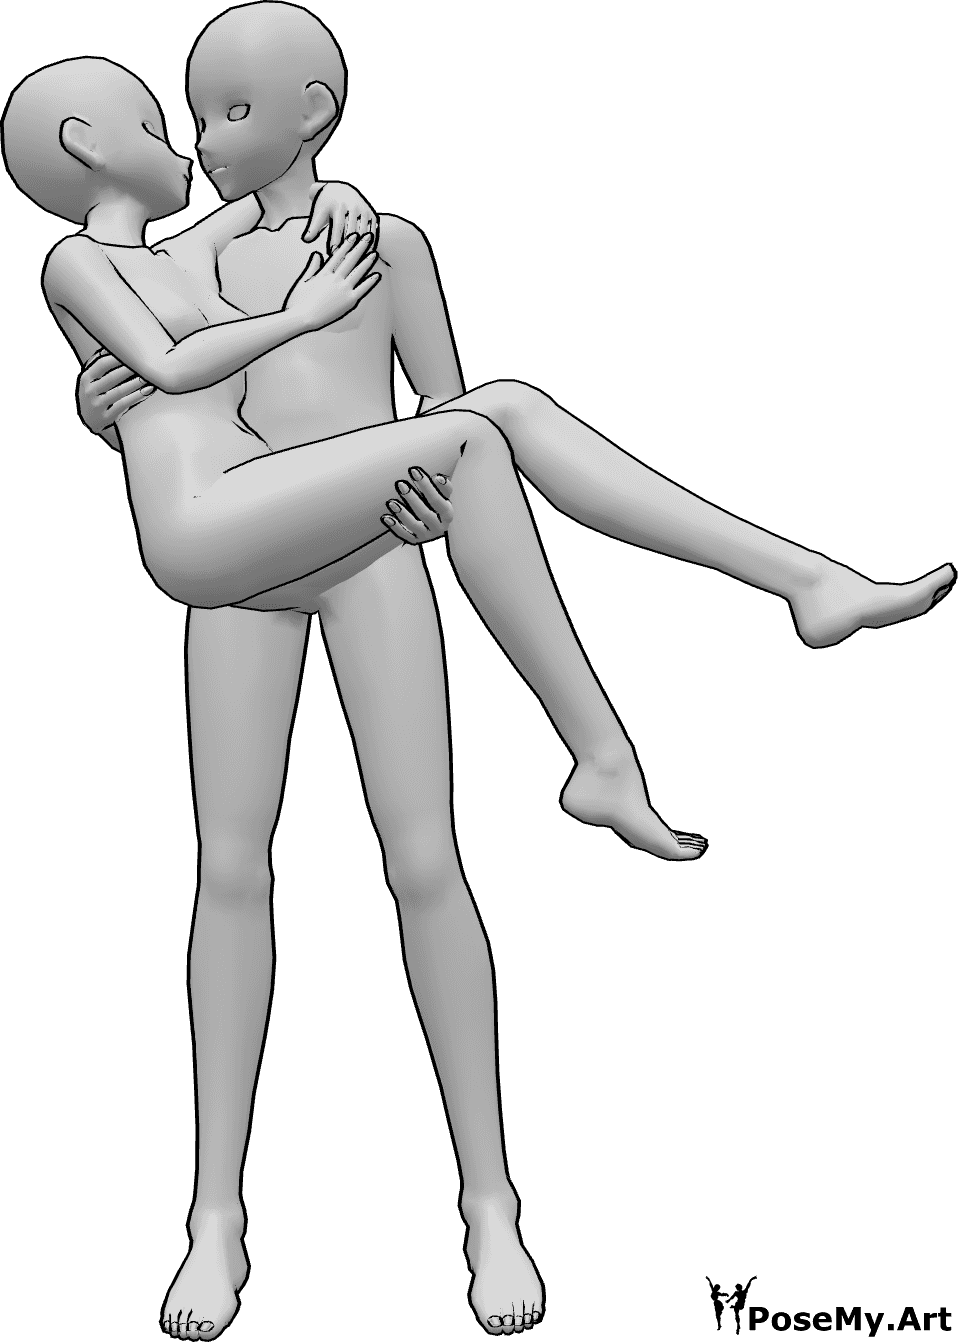 Referencia de poses- Anime con pose de beso - El macho anime sostiene a la hembra en brazos, se miran y se besan